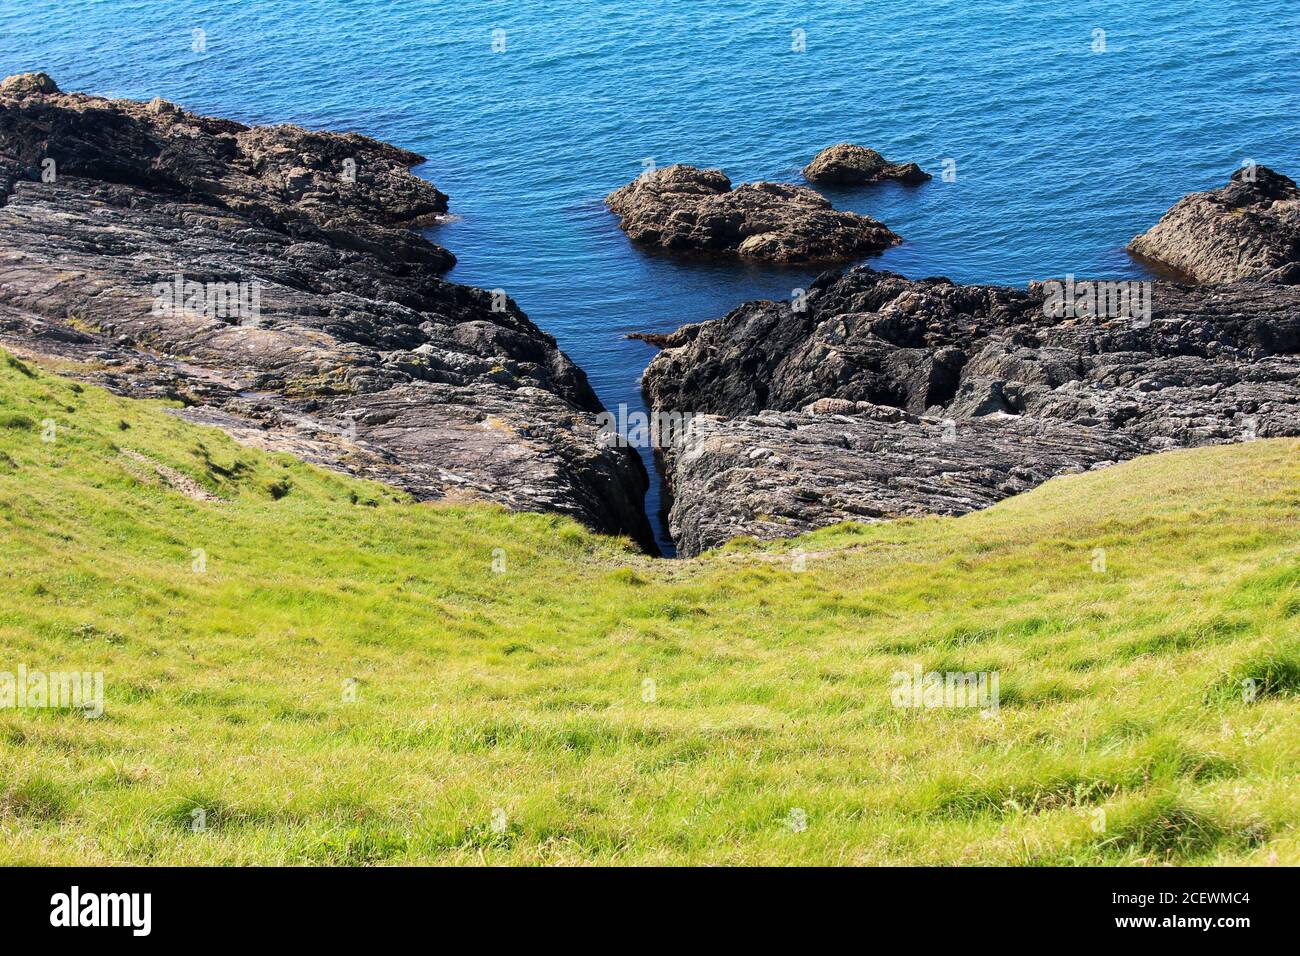 Split Rock crag in einem felsigen Ausbiss auf dem Boden eines steilen Grashügels an der blauen Irischen See an der Küste von Porth Colmen, Nordwales Stockfoto